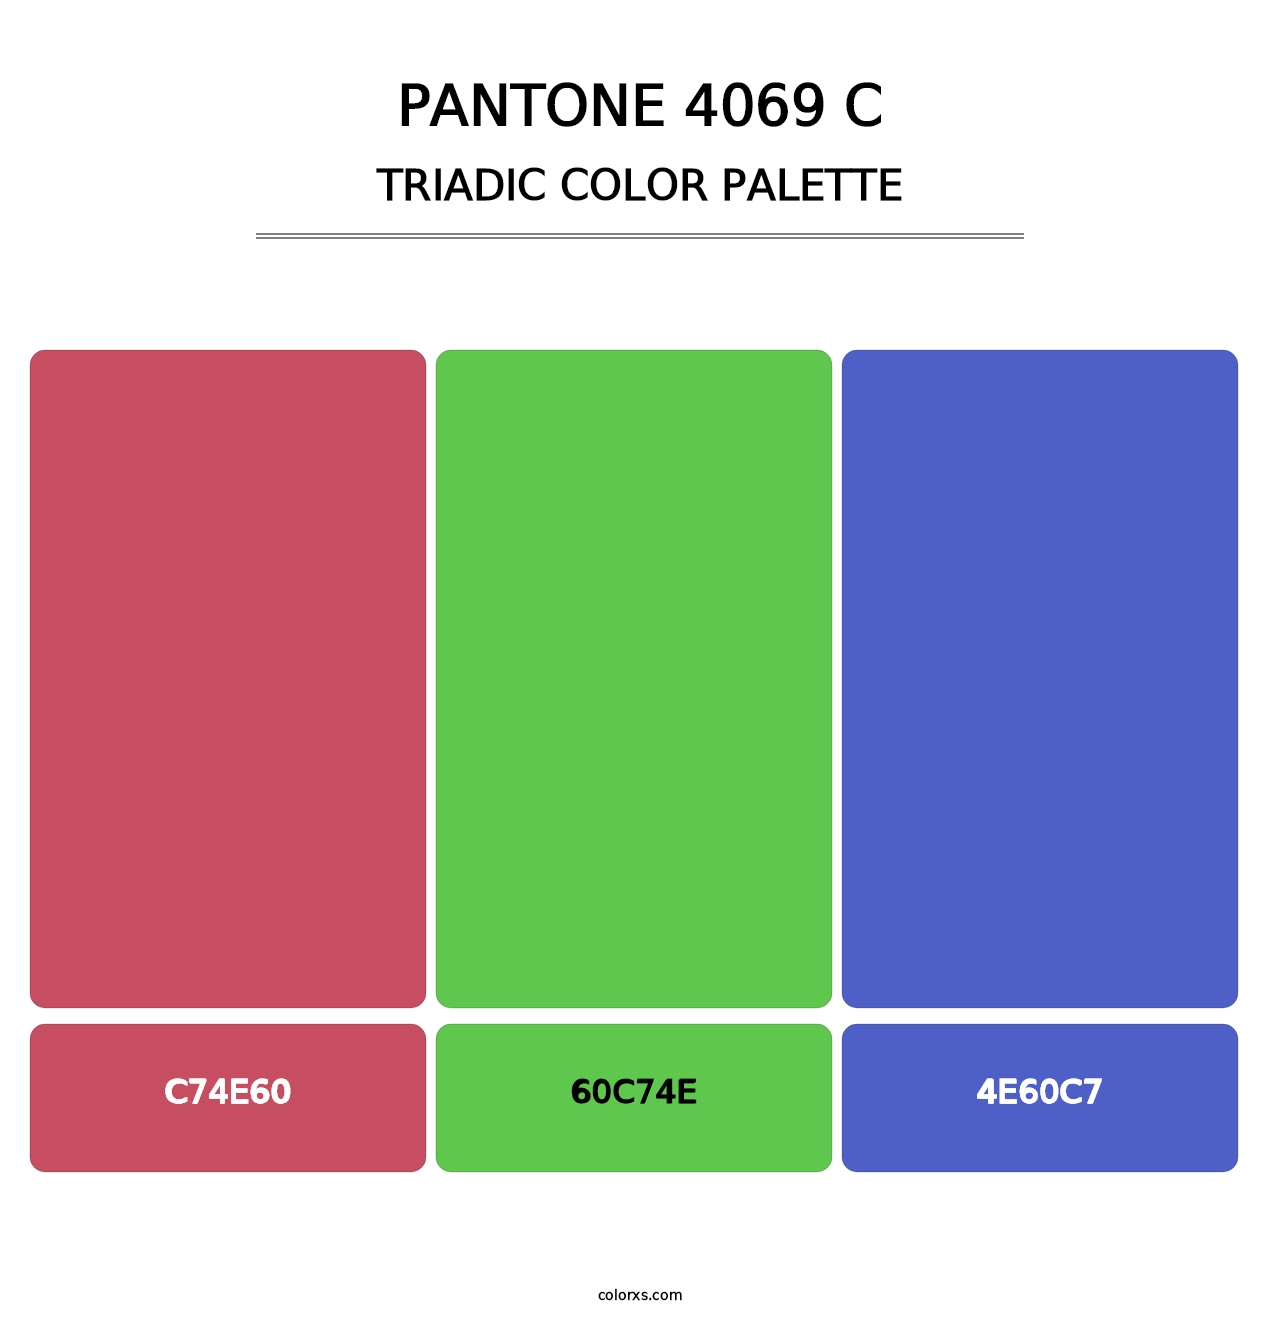 PANTONE 4069 C - Triadic Color Palette